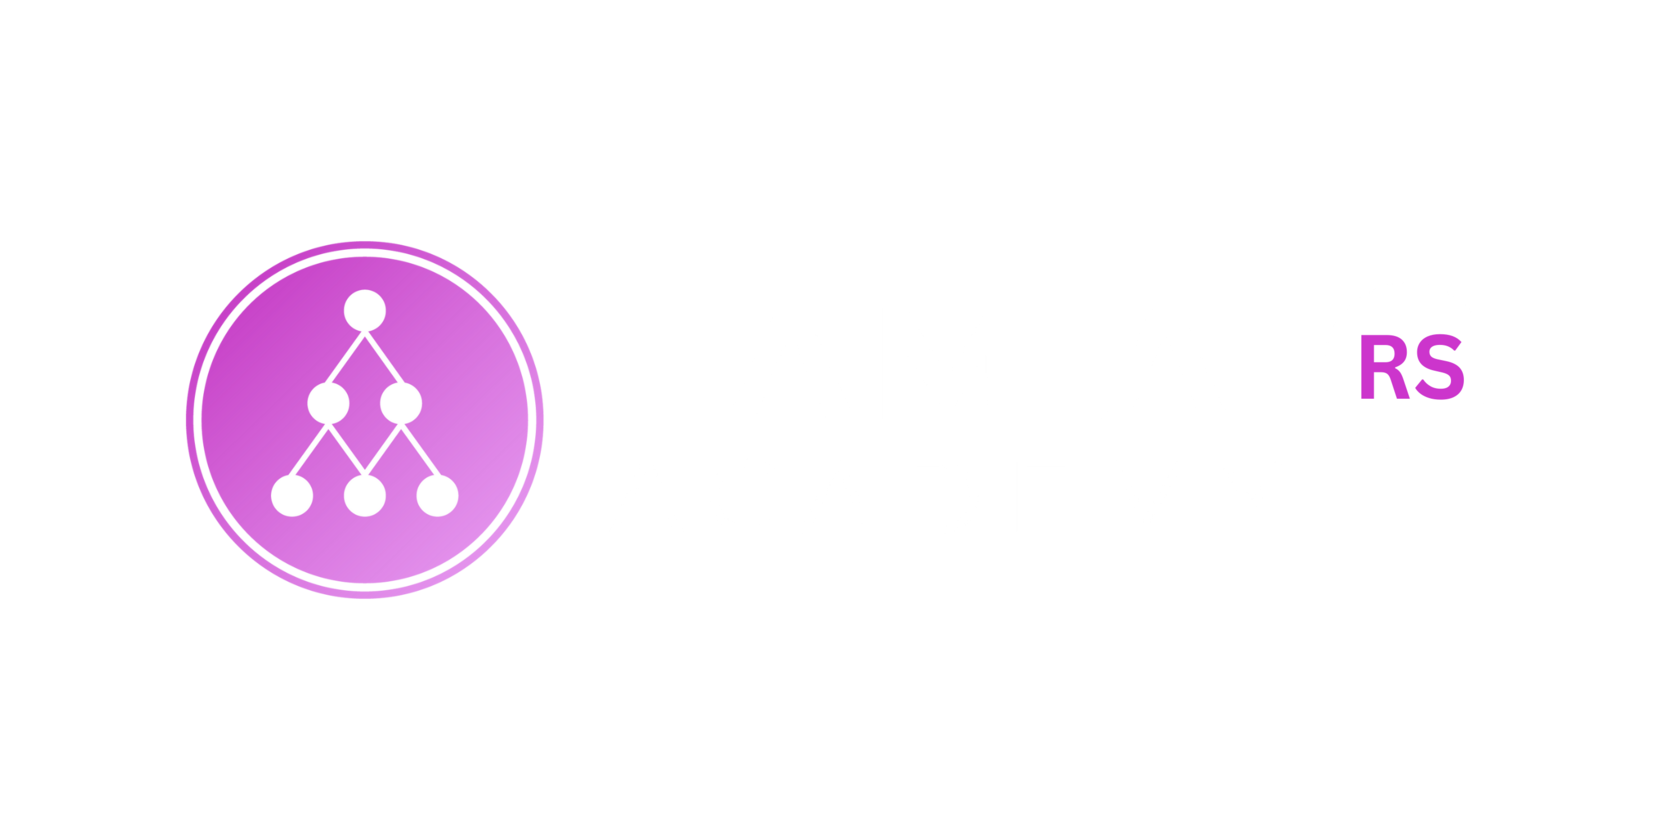 I AM AI Academy